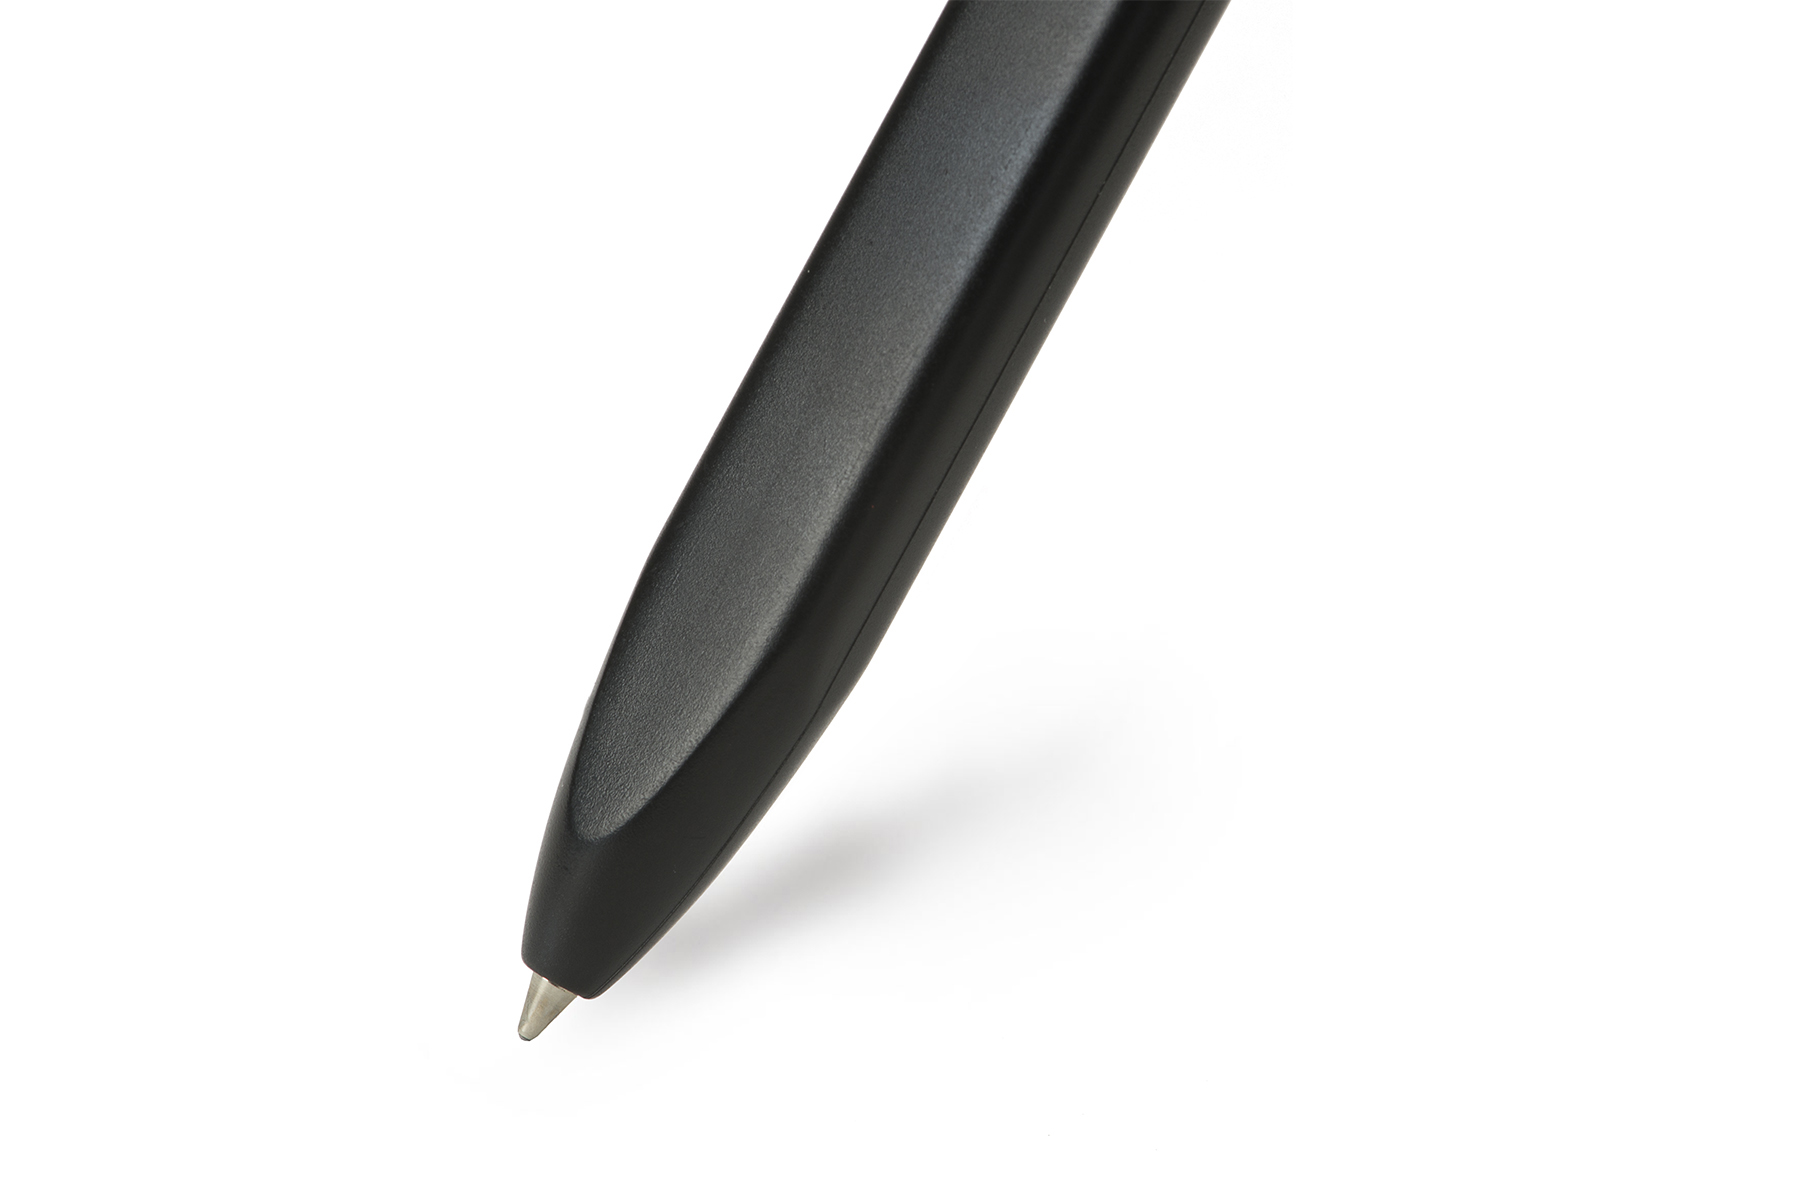 Ручка Молескин. Moleskine ручка. Ручка картинка. Ручка Молескин красная. Pens plus